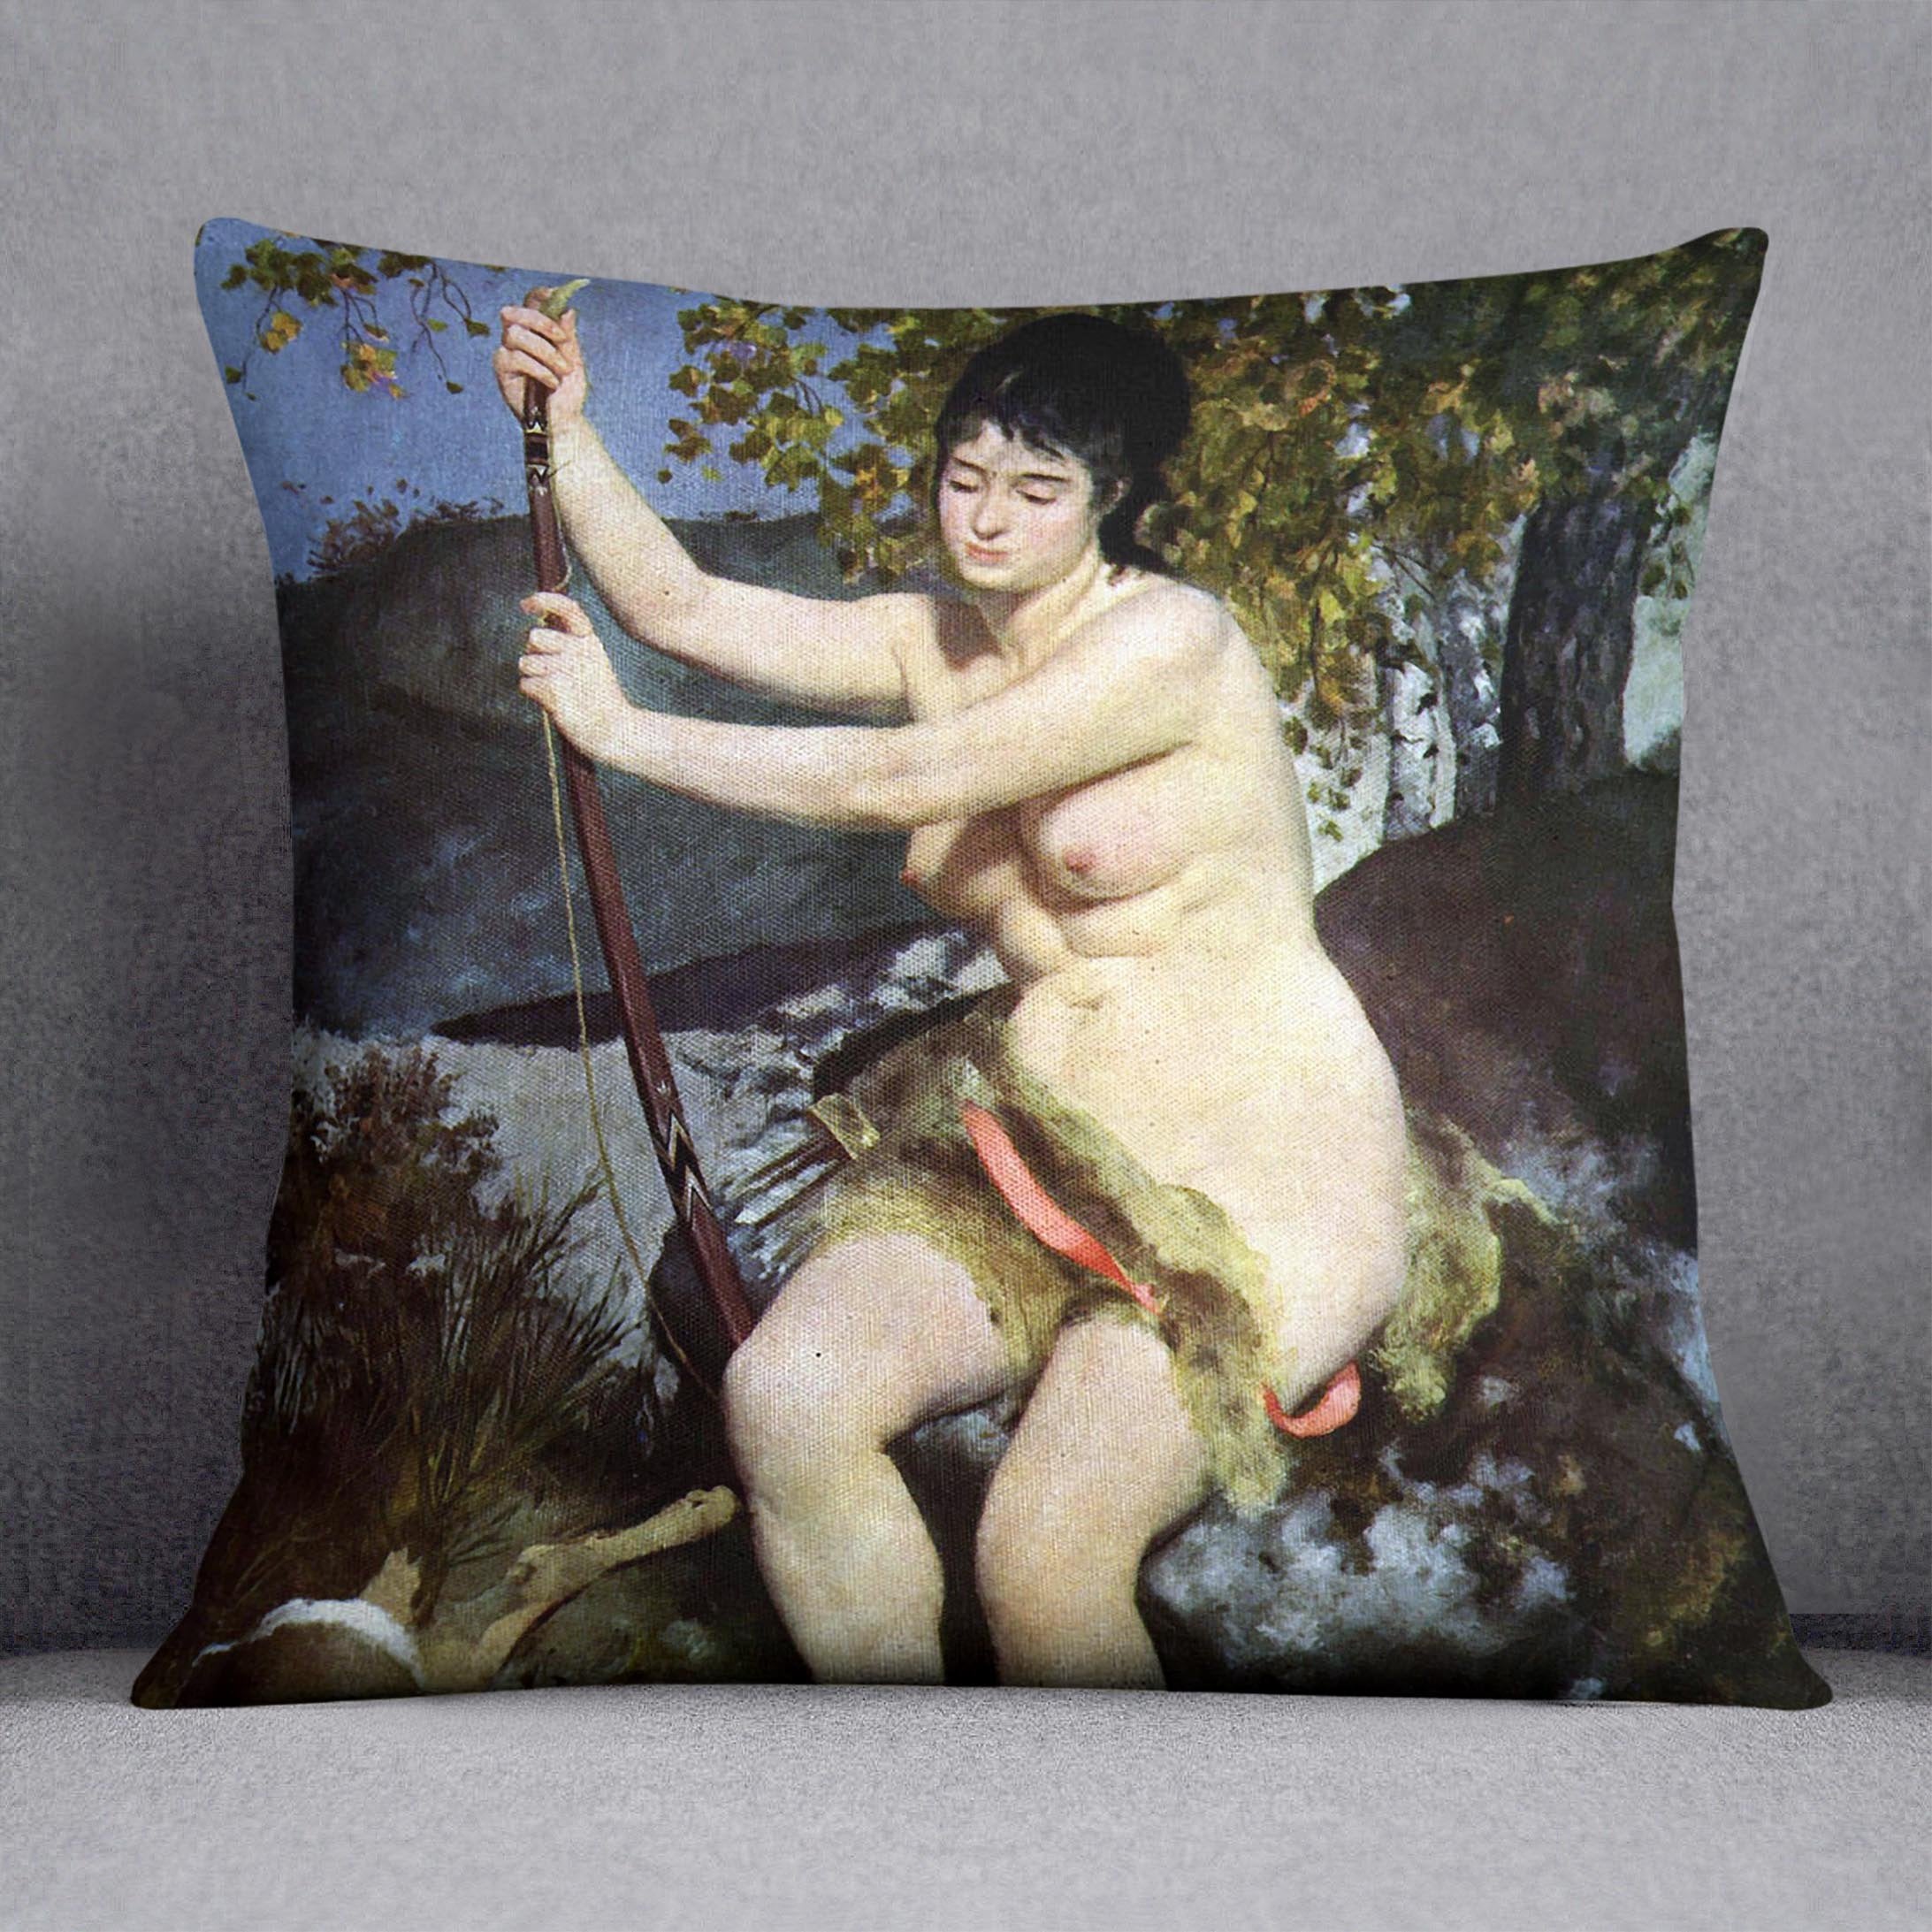 Diana as hunter by Renoir Throw Pillow